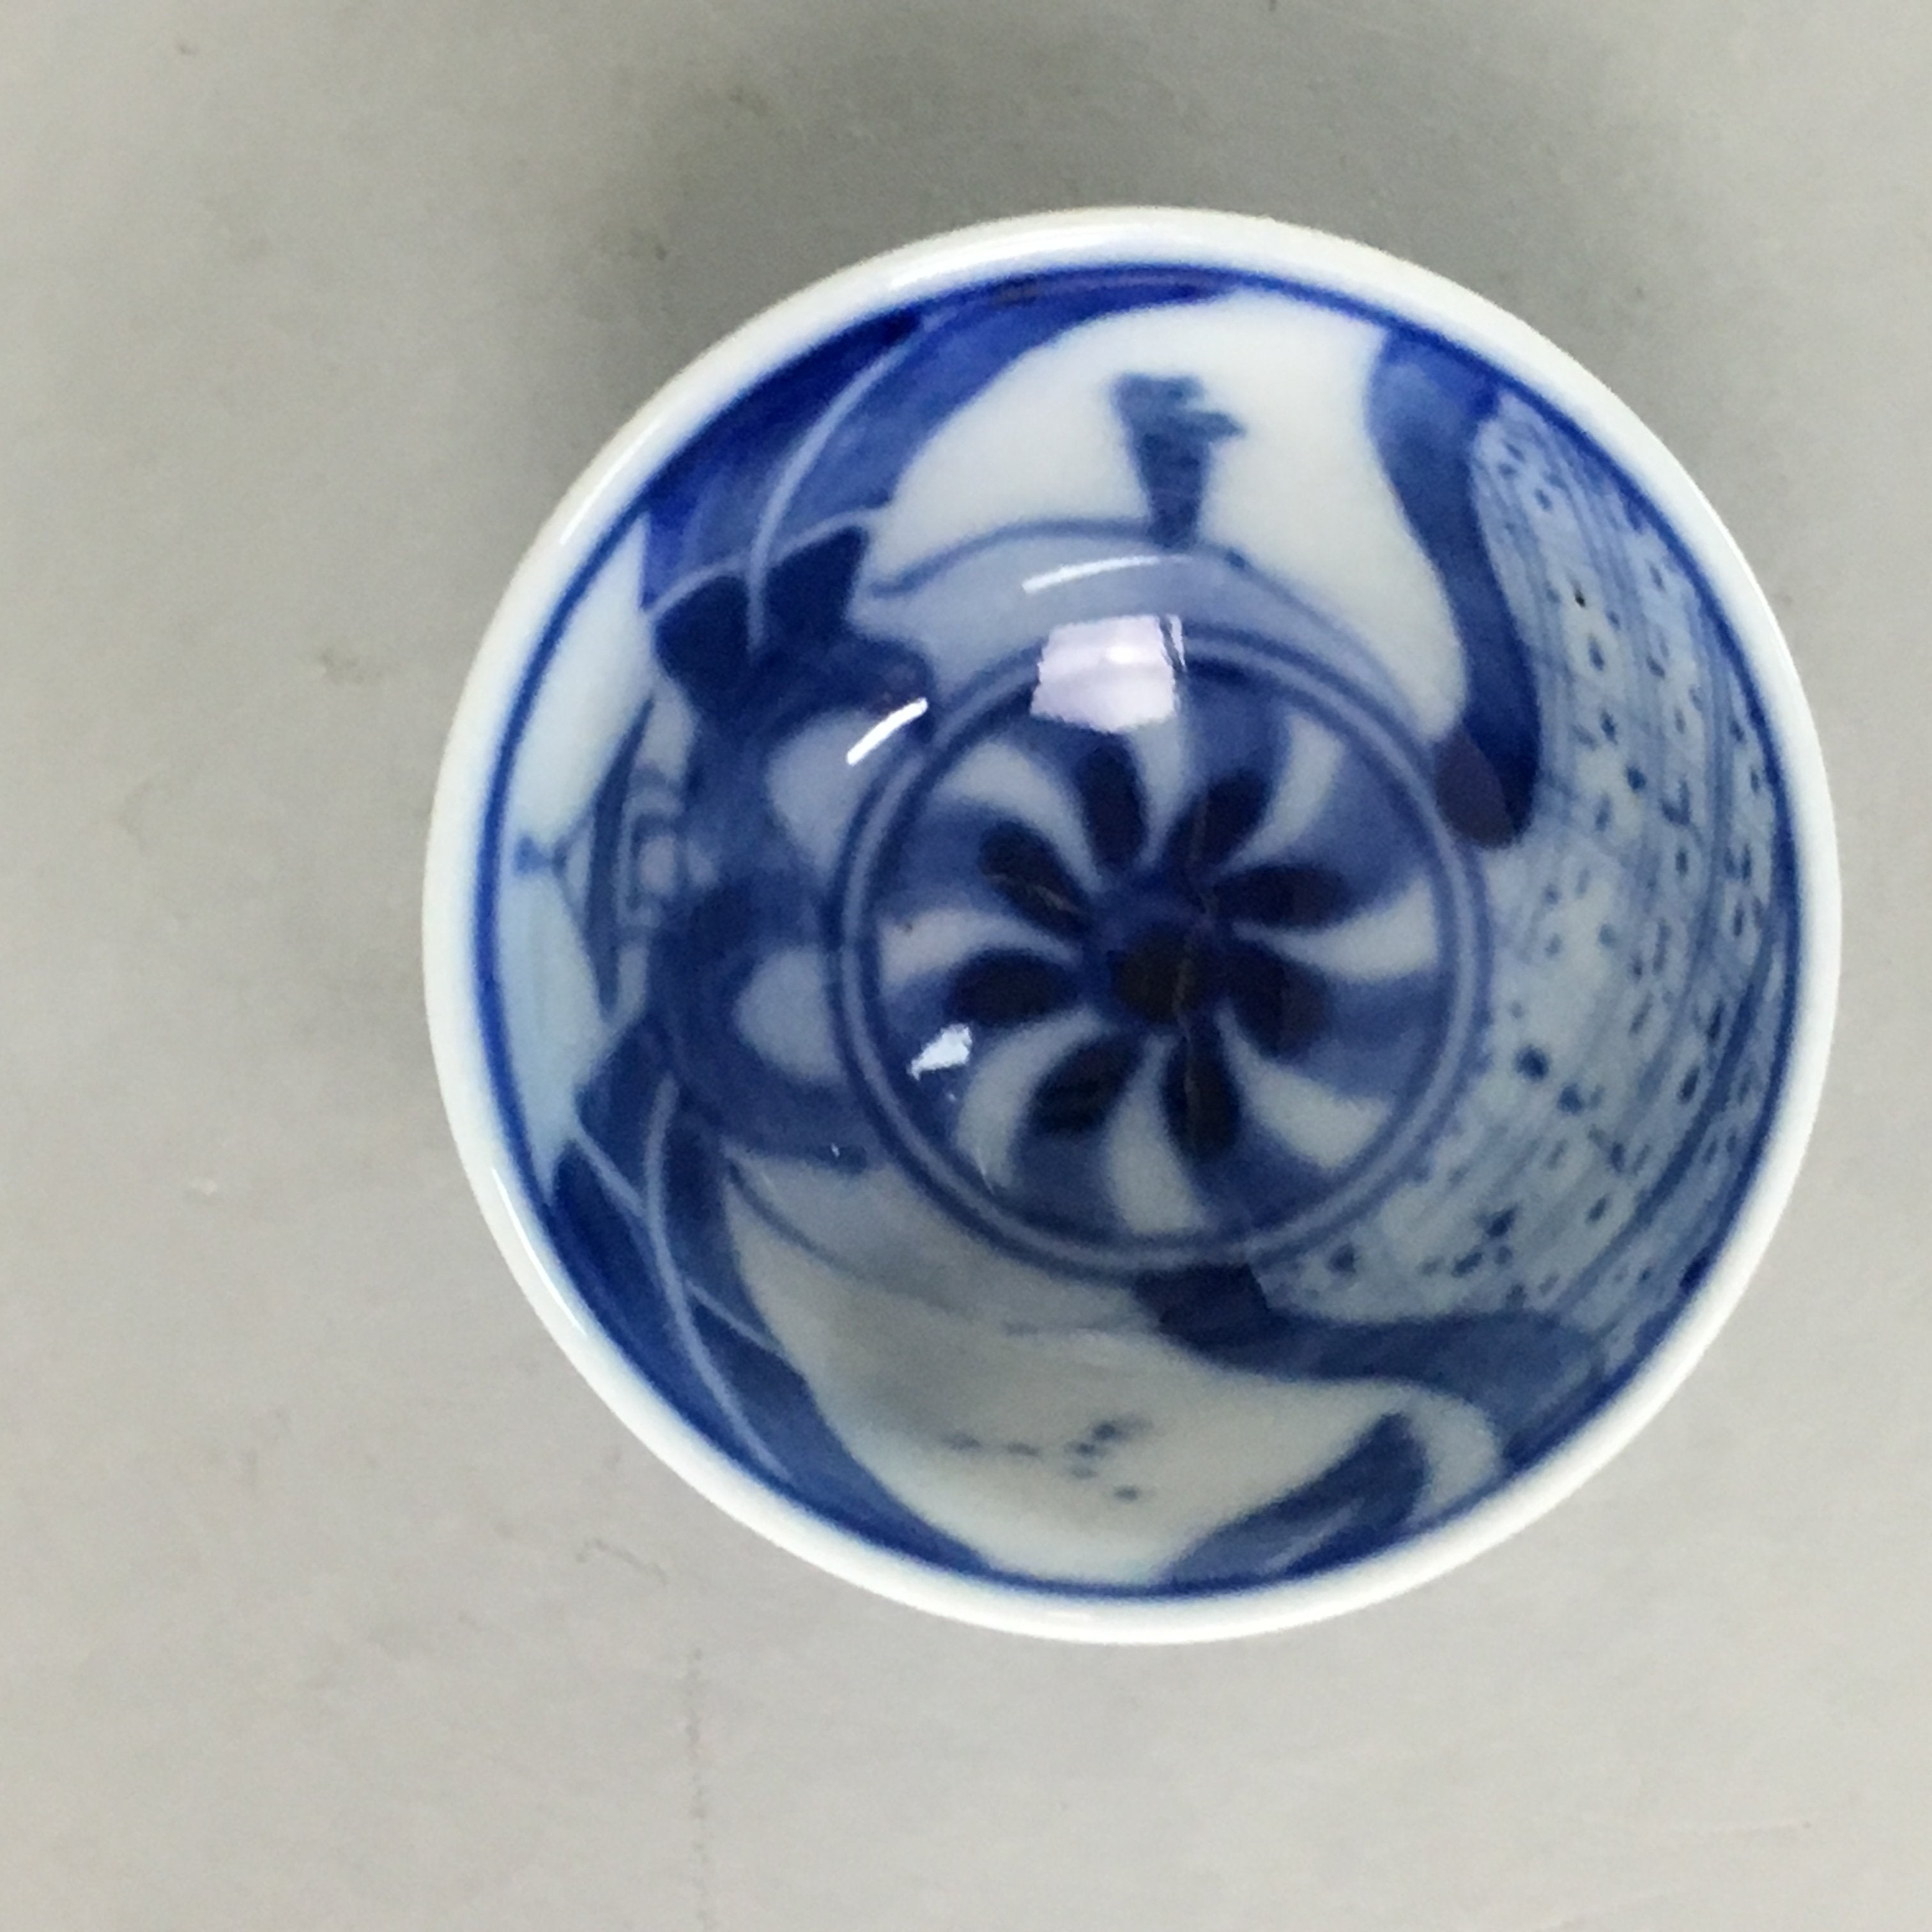 Japanese Kutani Porcelain Sake Cup Guinomi Sakazuki Vtg Signed Sometsuke GU526